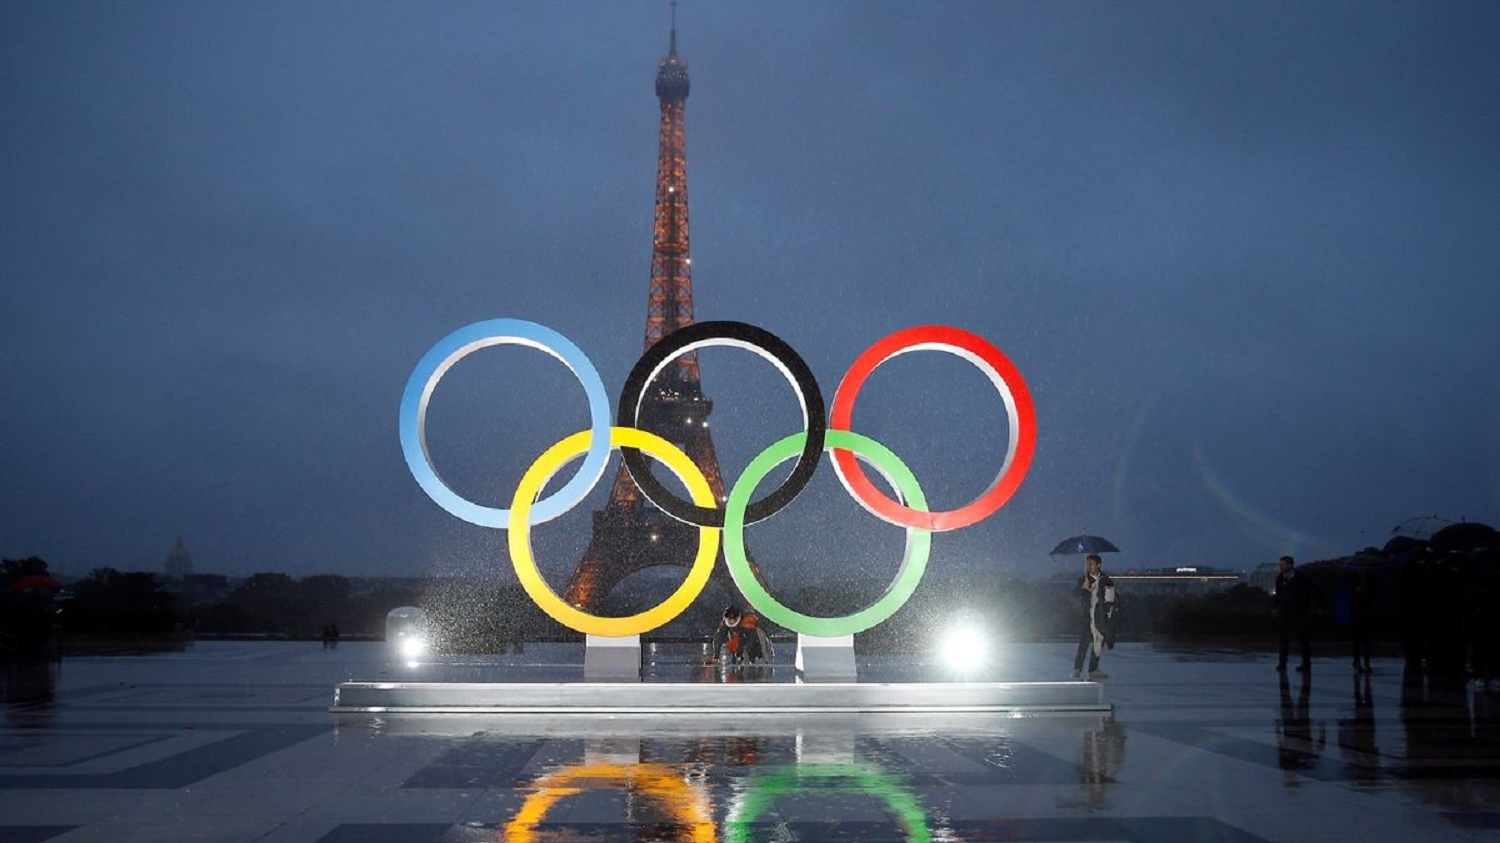 Paris 2024 Olympics: Olympic के Symbol में पांच Ring का क्या मतलब है?